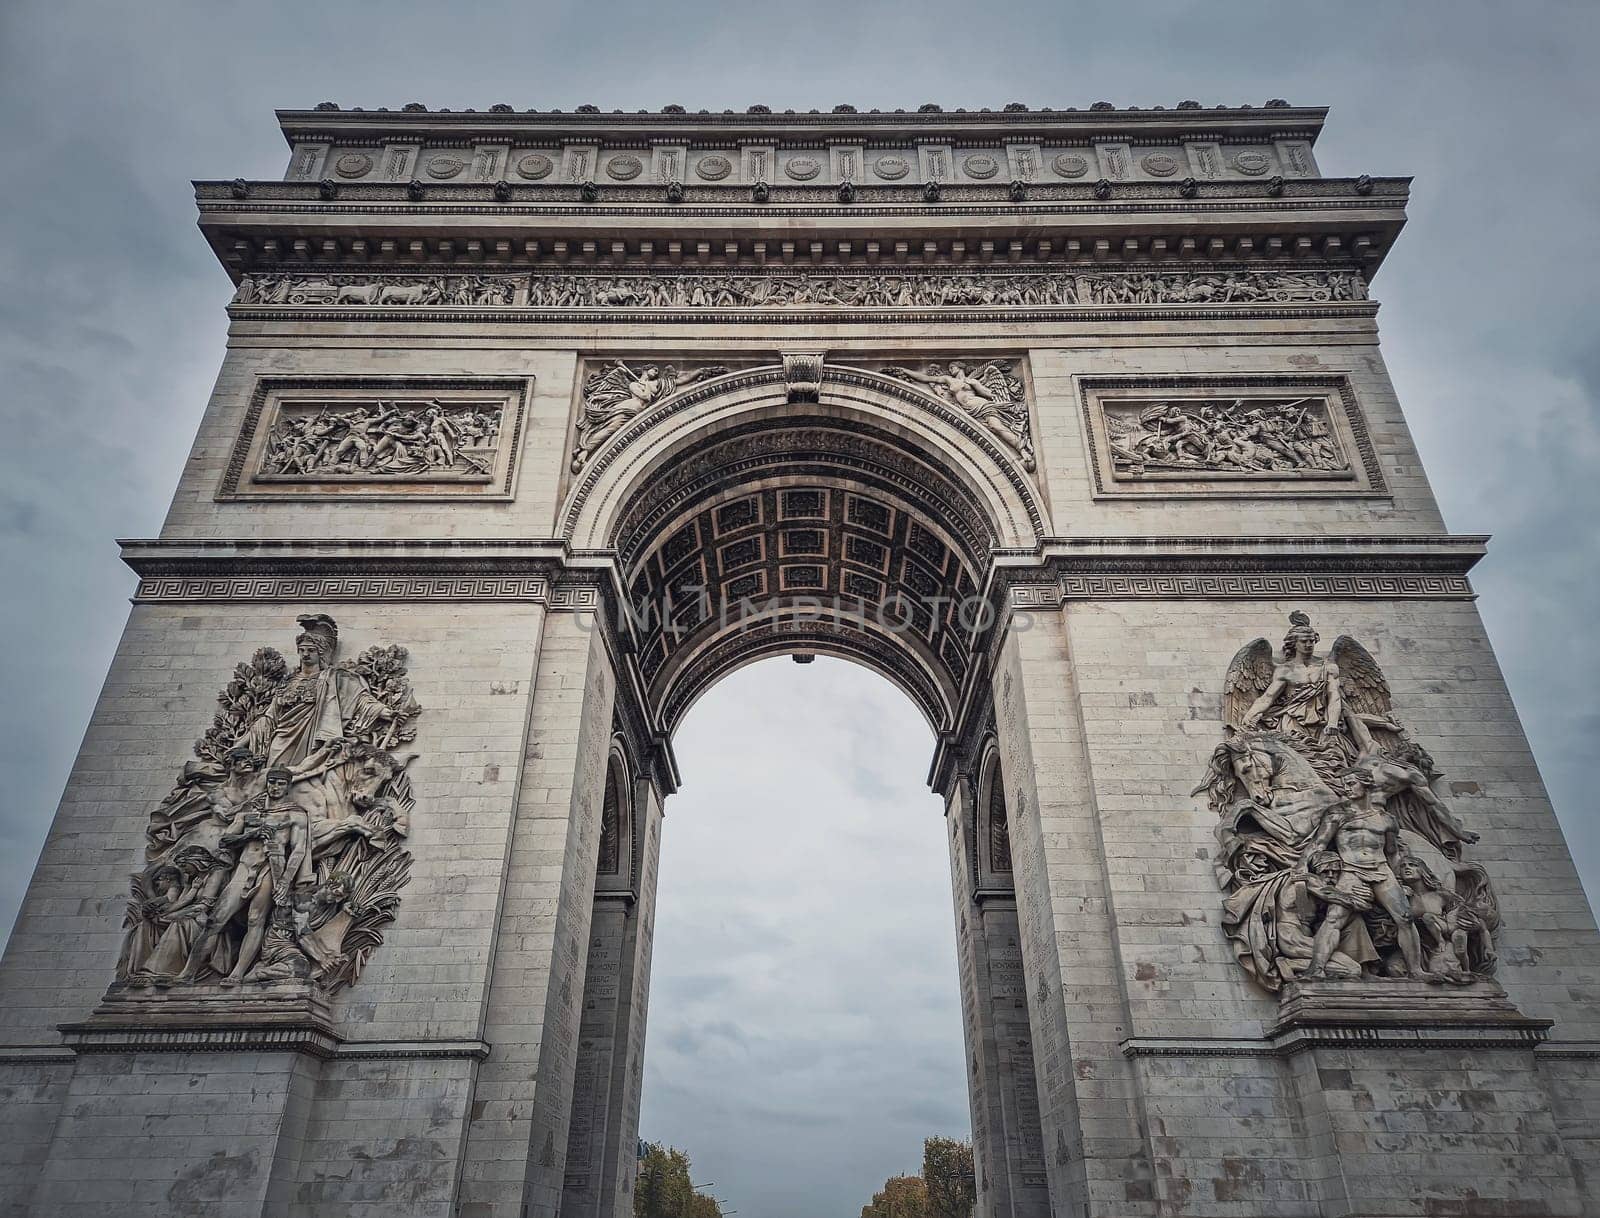 Triumphal Arch (Arc de triomphe) in Paris, France. Closeup architectural details of the famous historic landmark	 by psychoshadow